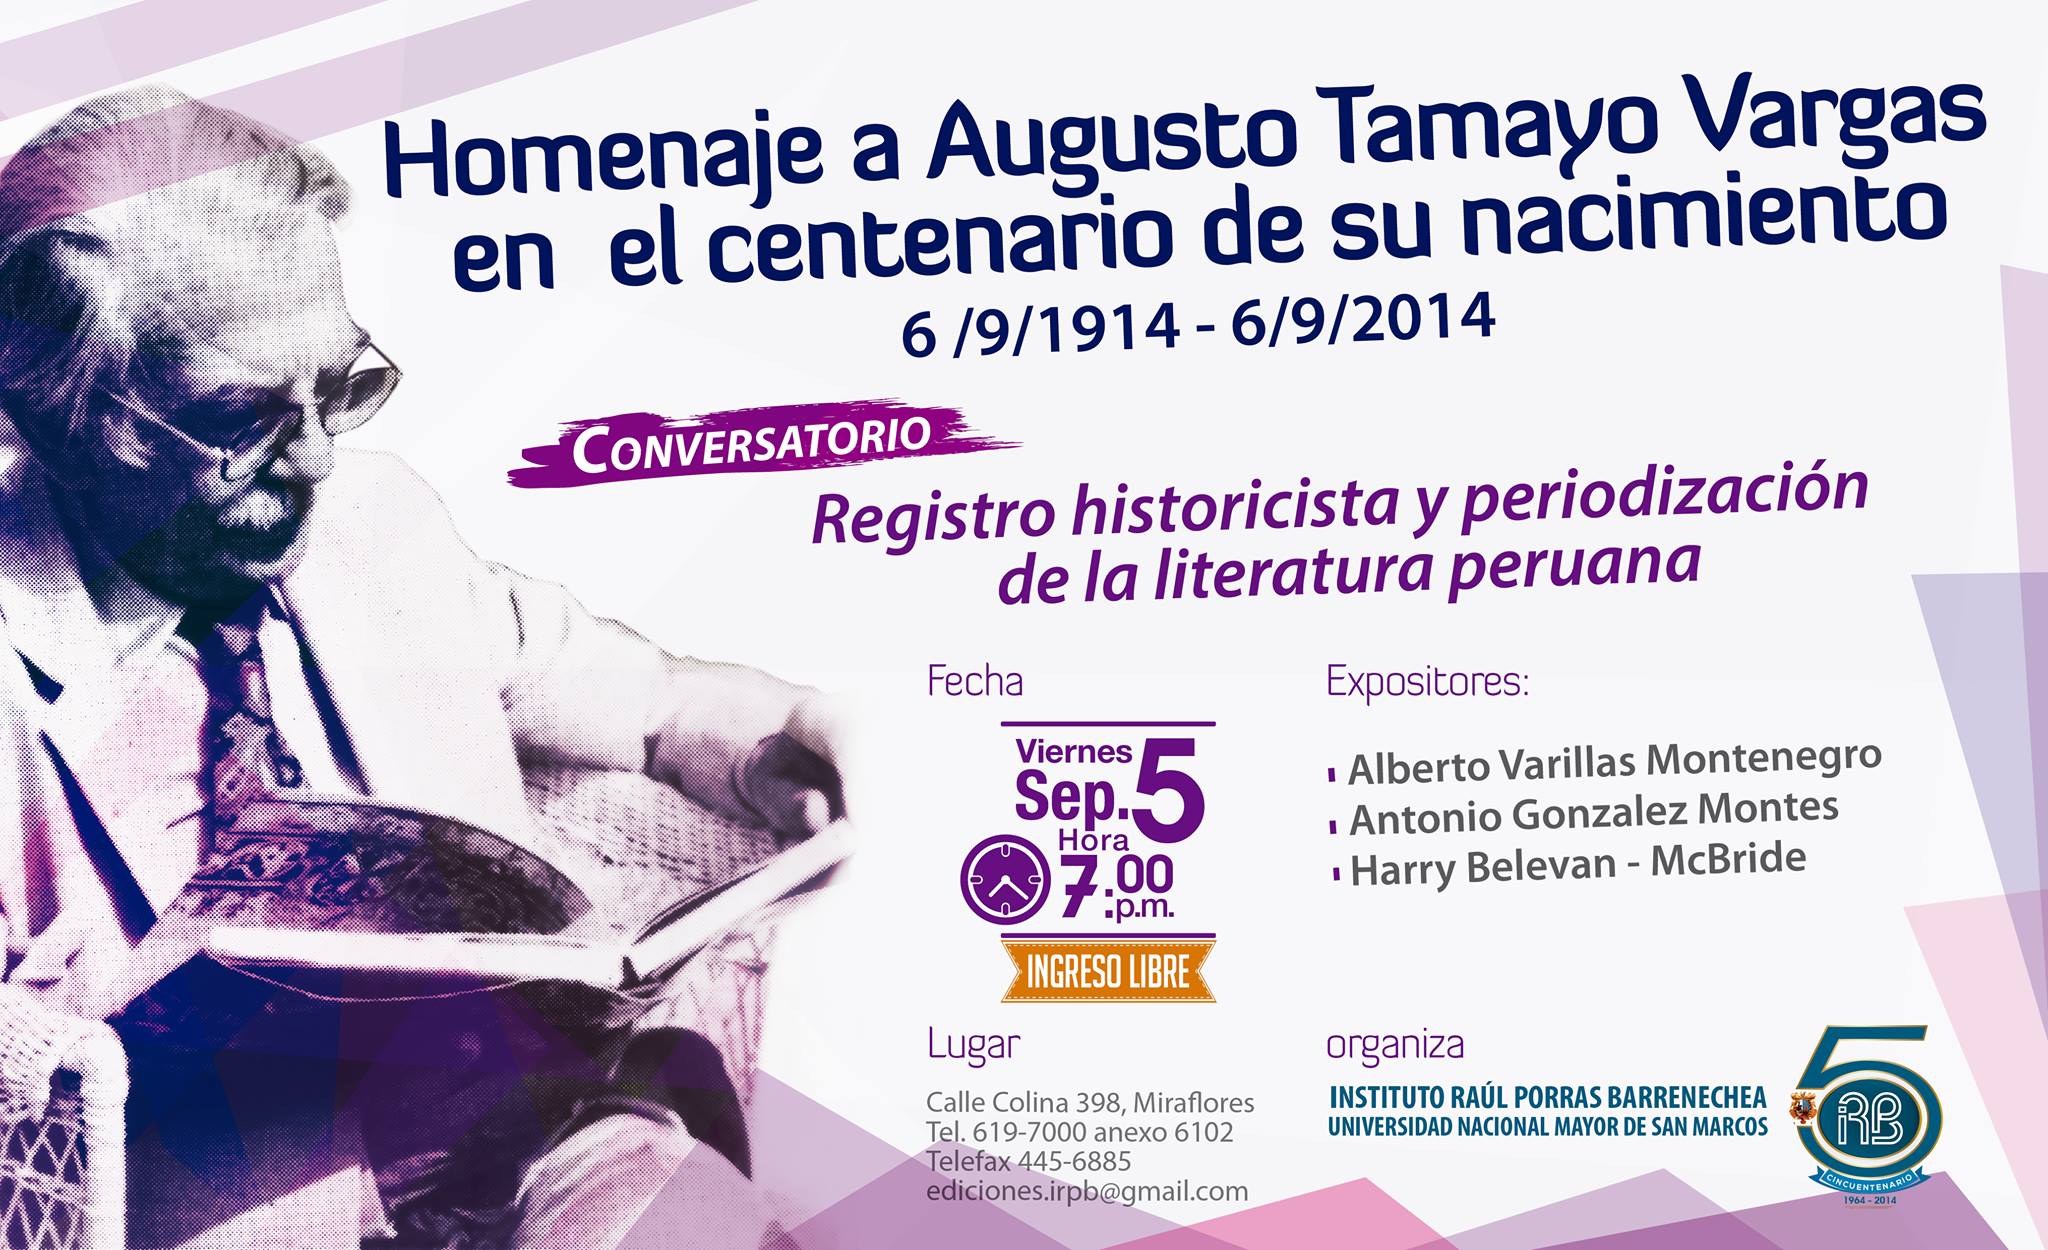 Augusto Tamayo Vargas homenajeado esta noche en el Instituto Raúl Porras Barrenechea.